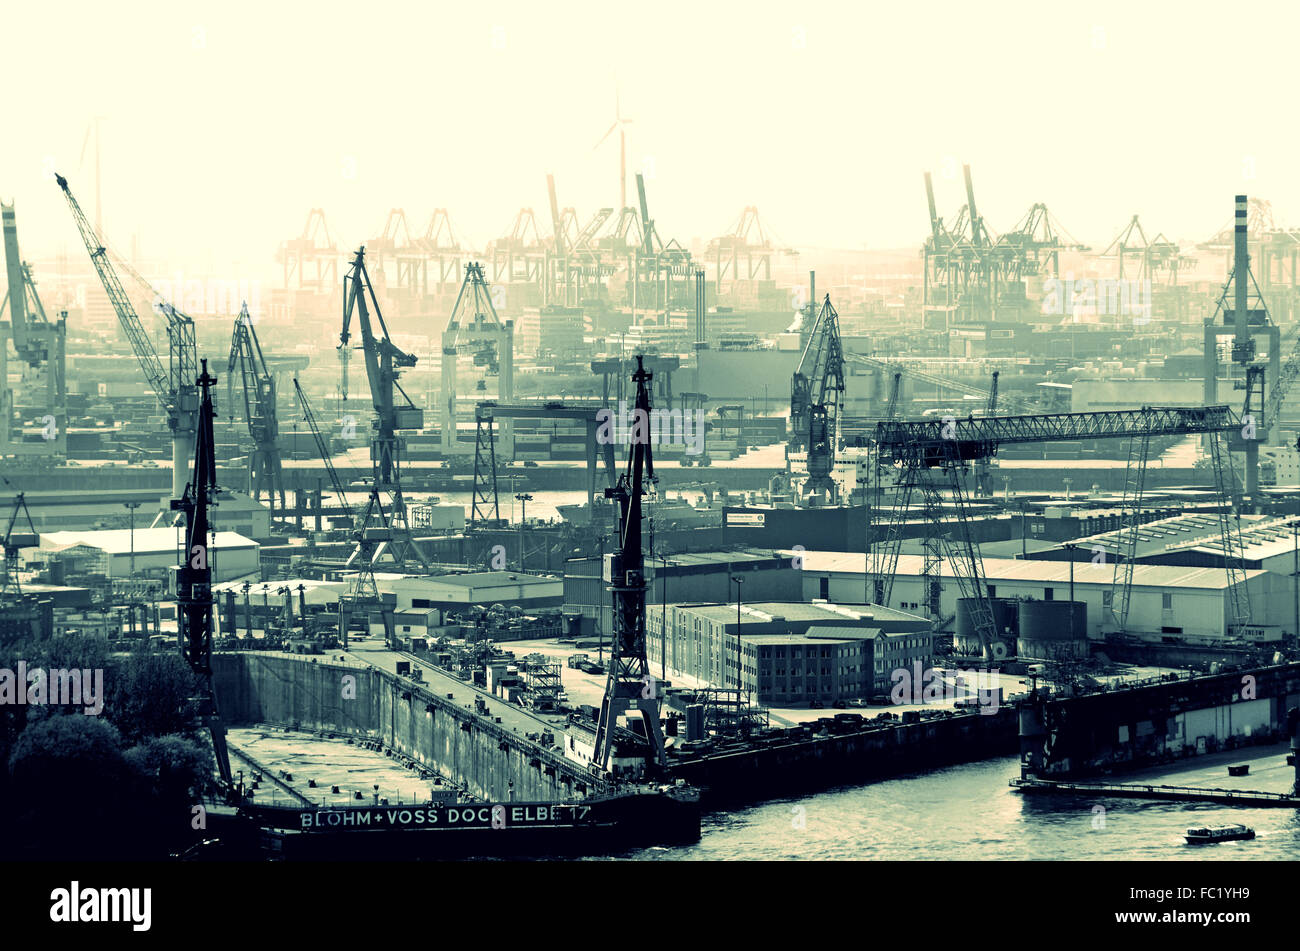 Hafen Hamburg mit Bohm und Voss Stock Photo